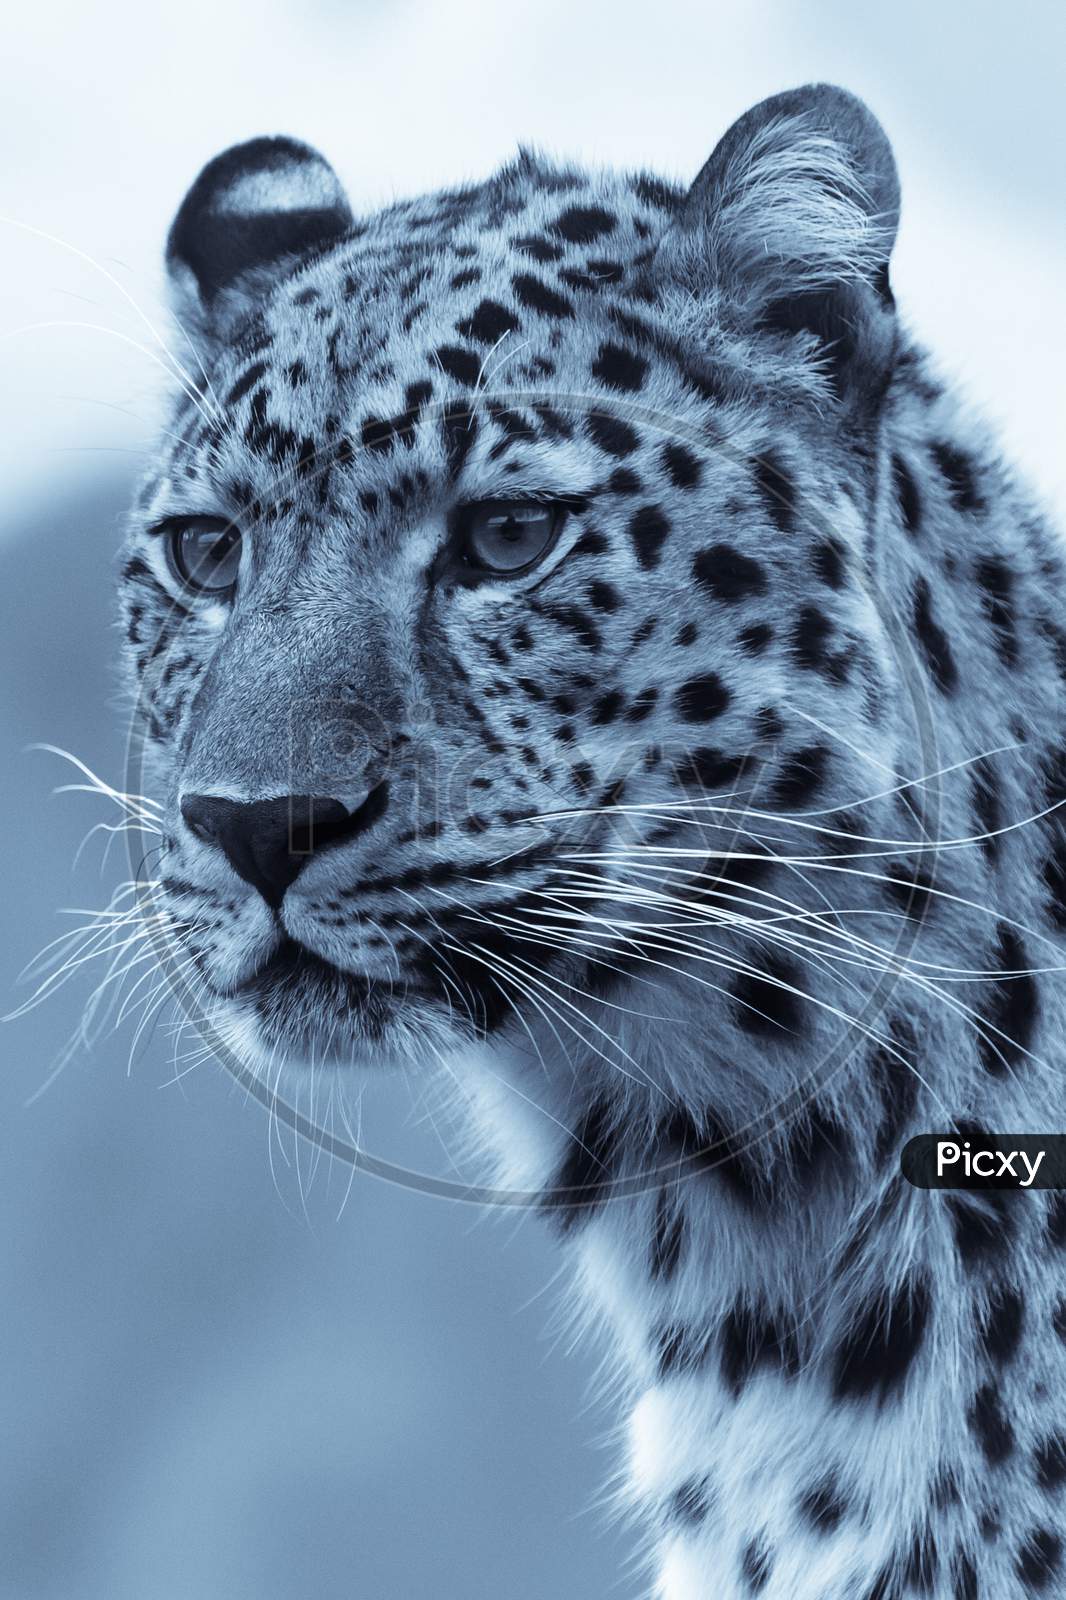 Cheetah black and white portrait